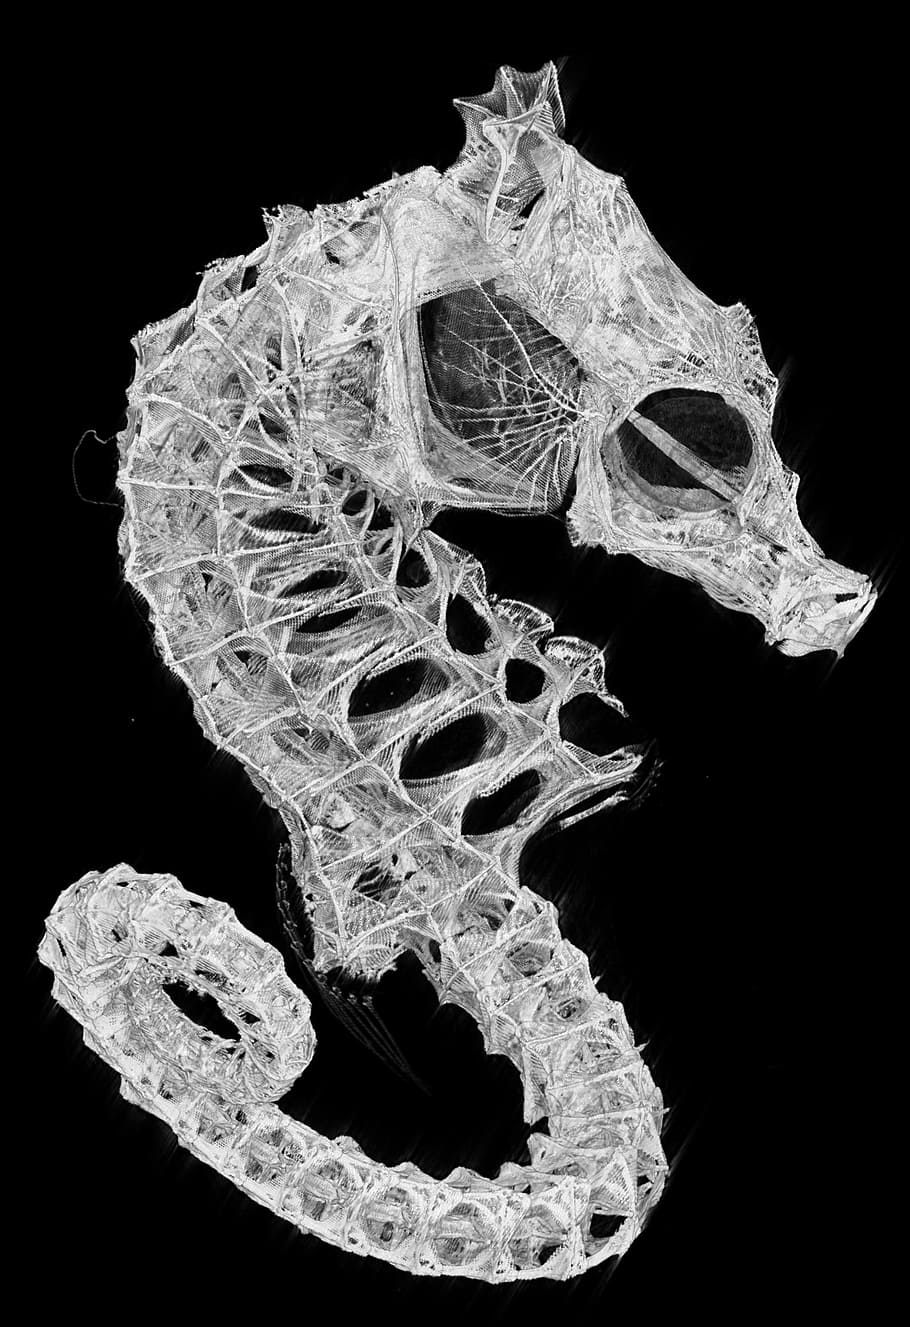 blanco, esqueleto de caballito de mar, negro, foto de fondo, caballito de mar, esqueleto, biología, pescado, fondo negro, foto de estudio